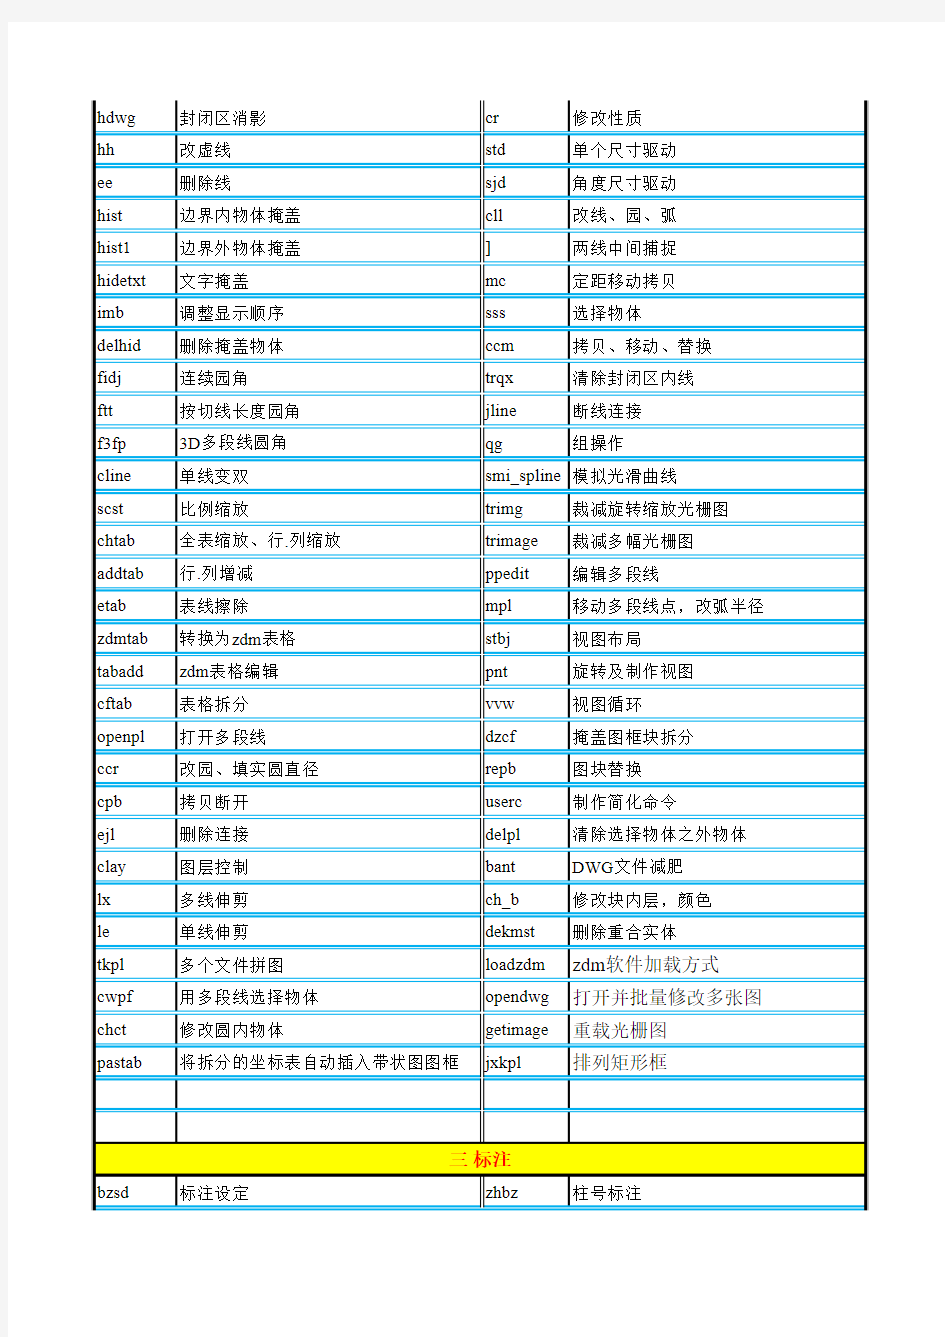 zdm命令全集(2013.05.31)